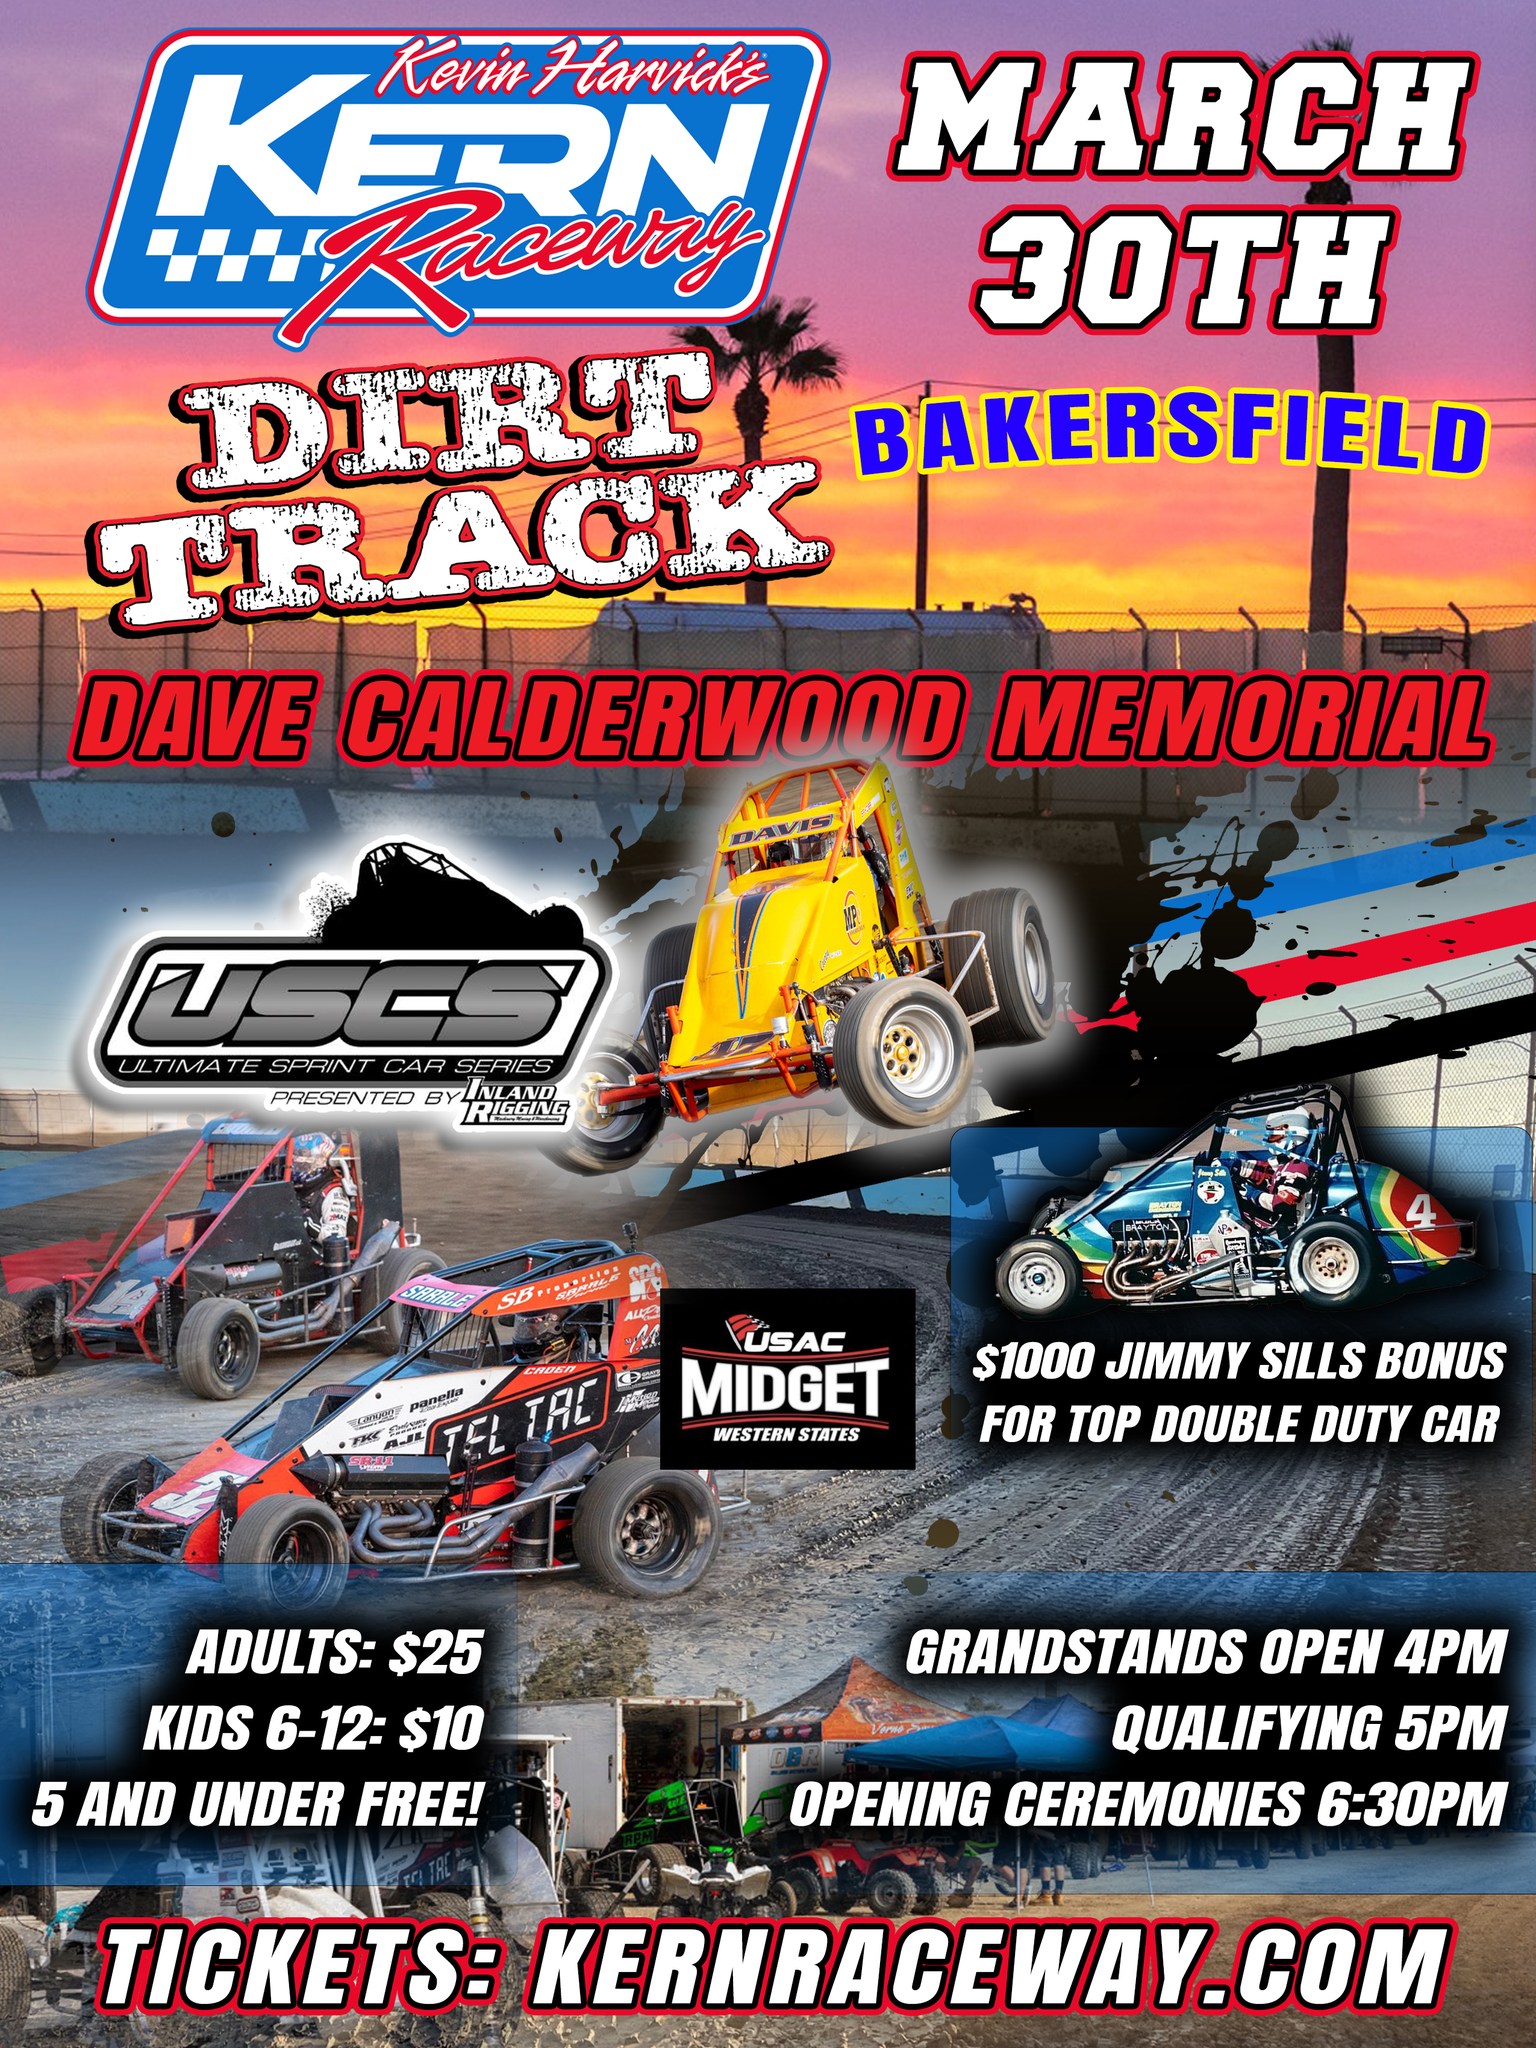 Dave Calderwood Memorial Race